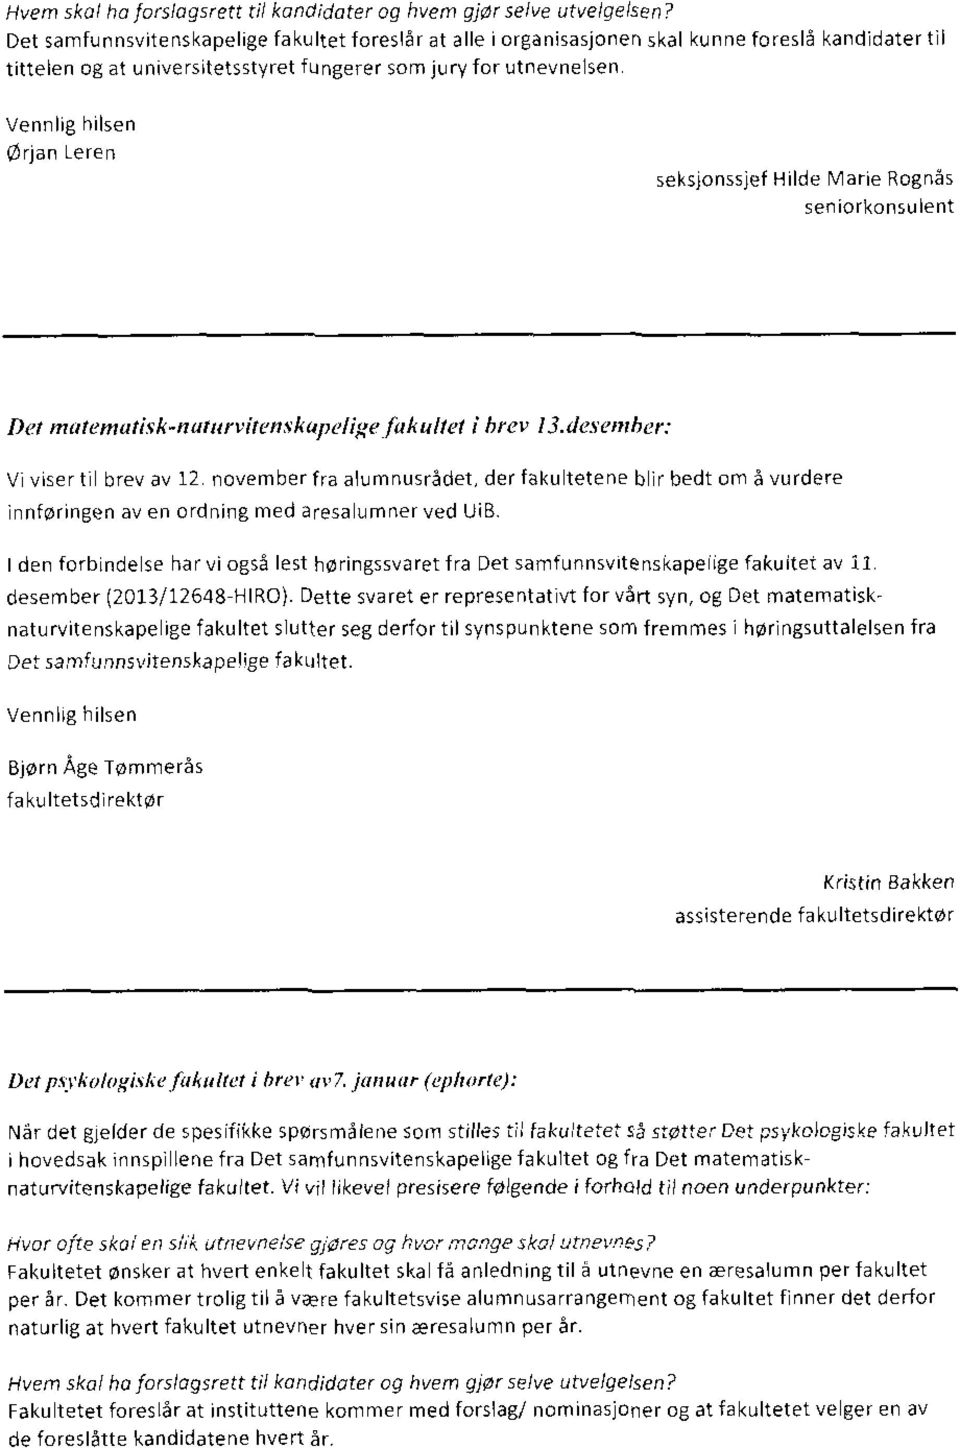 Vennlig tulsen ørtan Leren seksjonssjef Hilde Marie Rognås seniorkonsulent Det matemutisk - naturvitenskupelige fakultet i brev 13.desember: Vi viser til brev av 12.